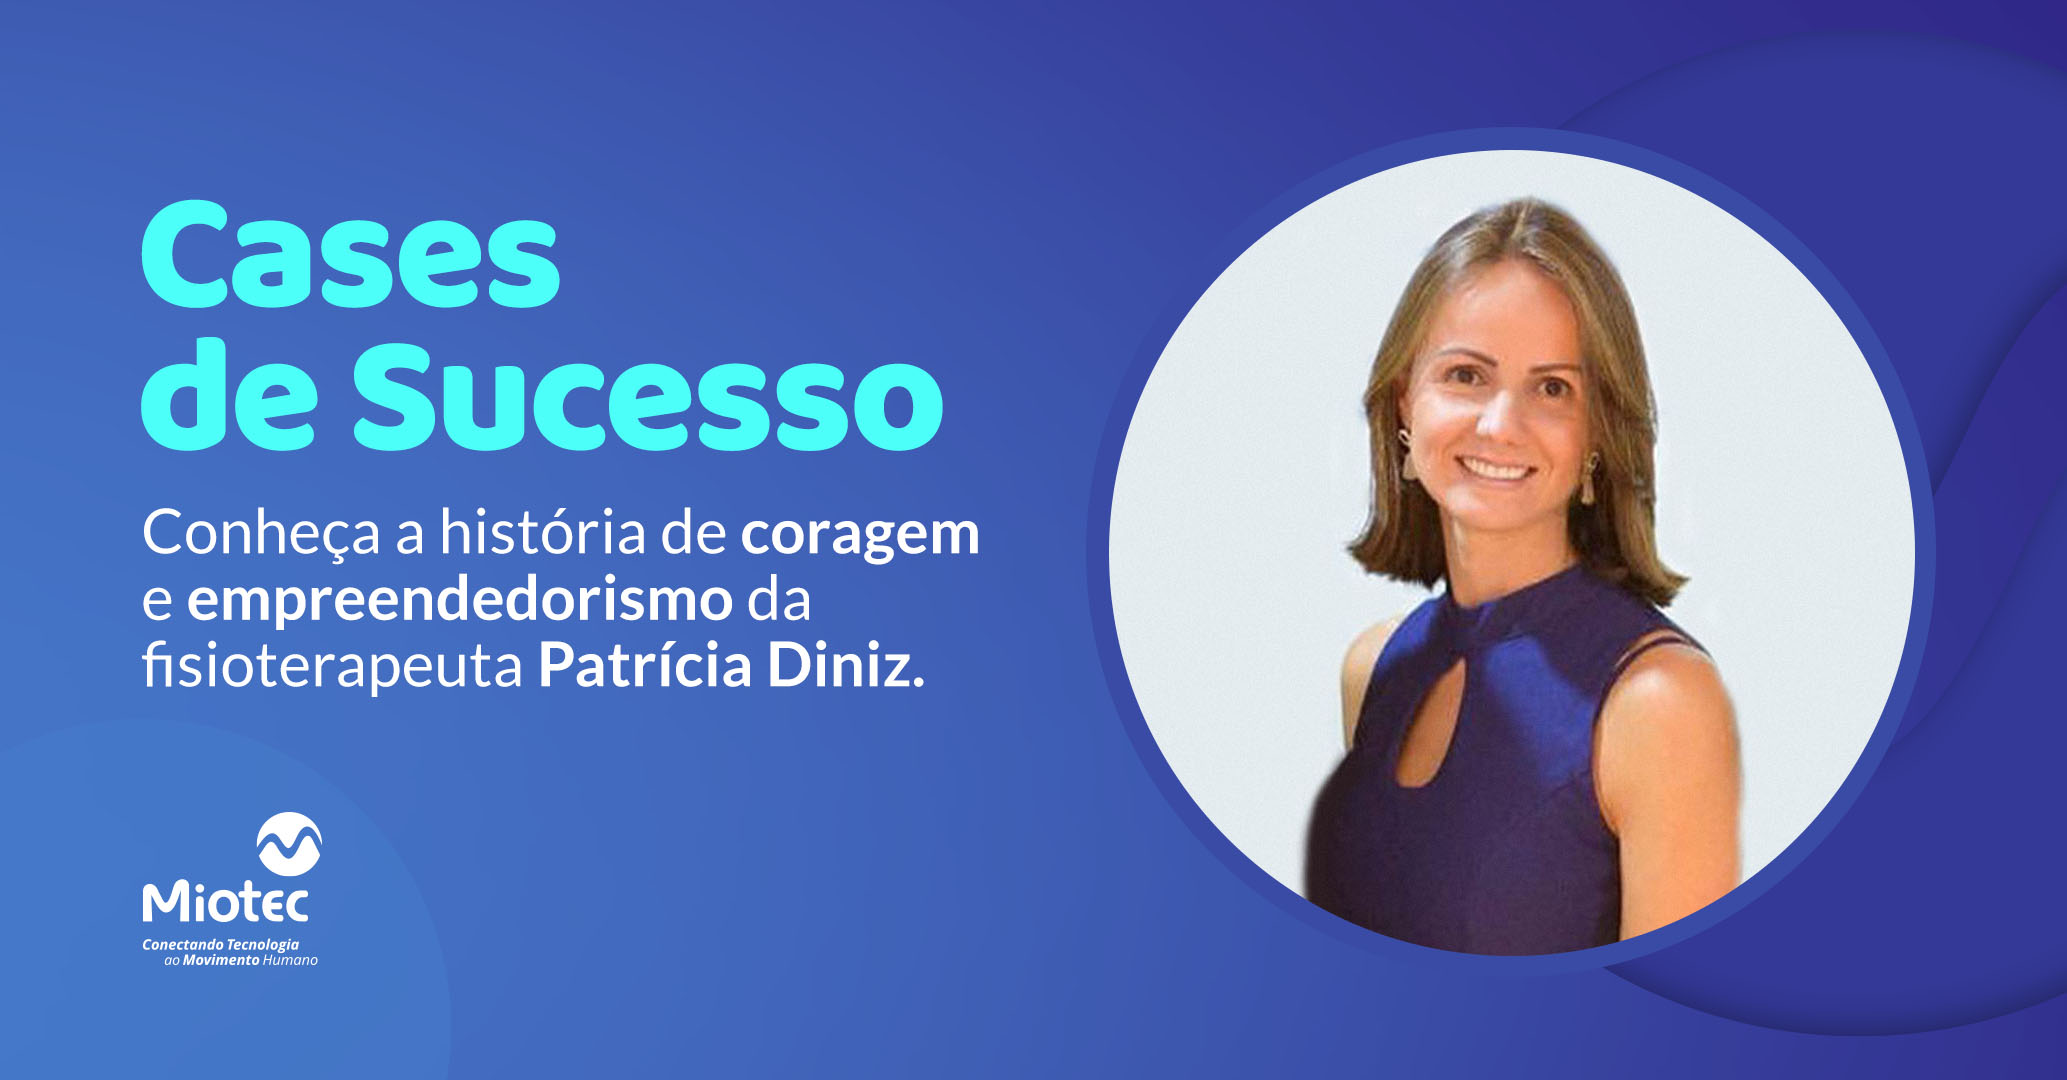 Case de sucesso: conheça a história de coragem e empreendedorismo da fisioterapeuta Patrícia Diniz